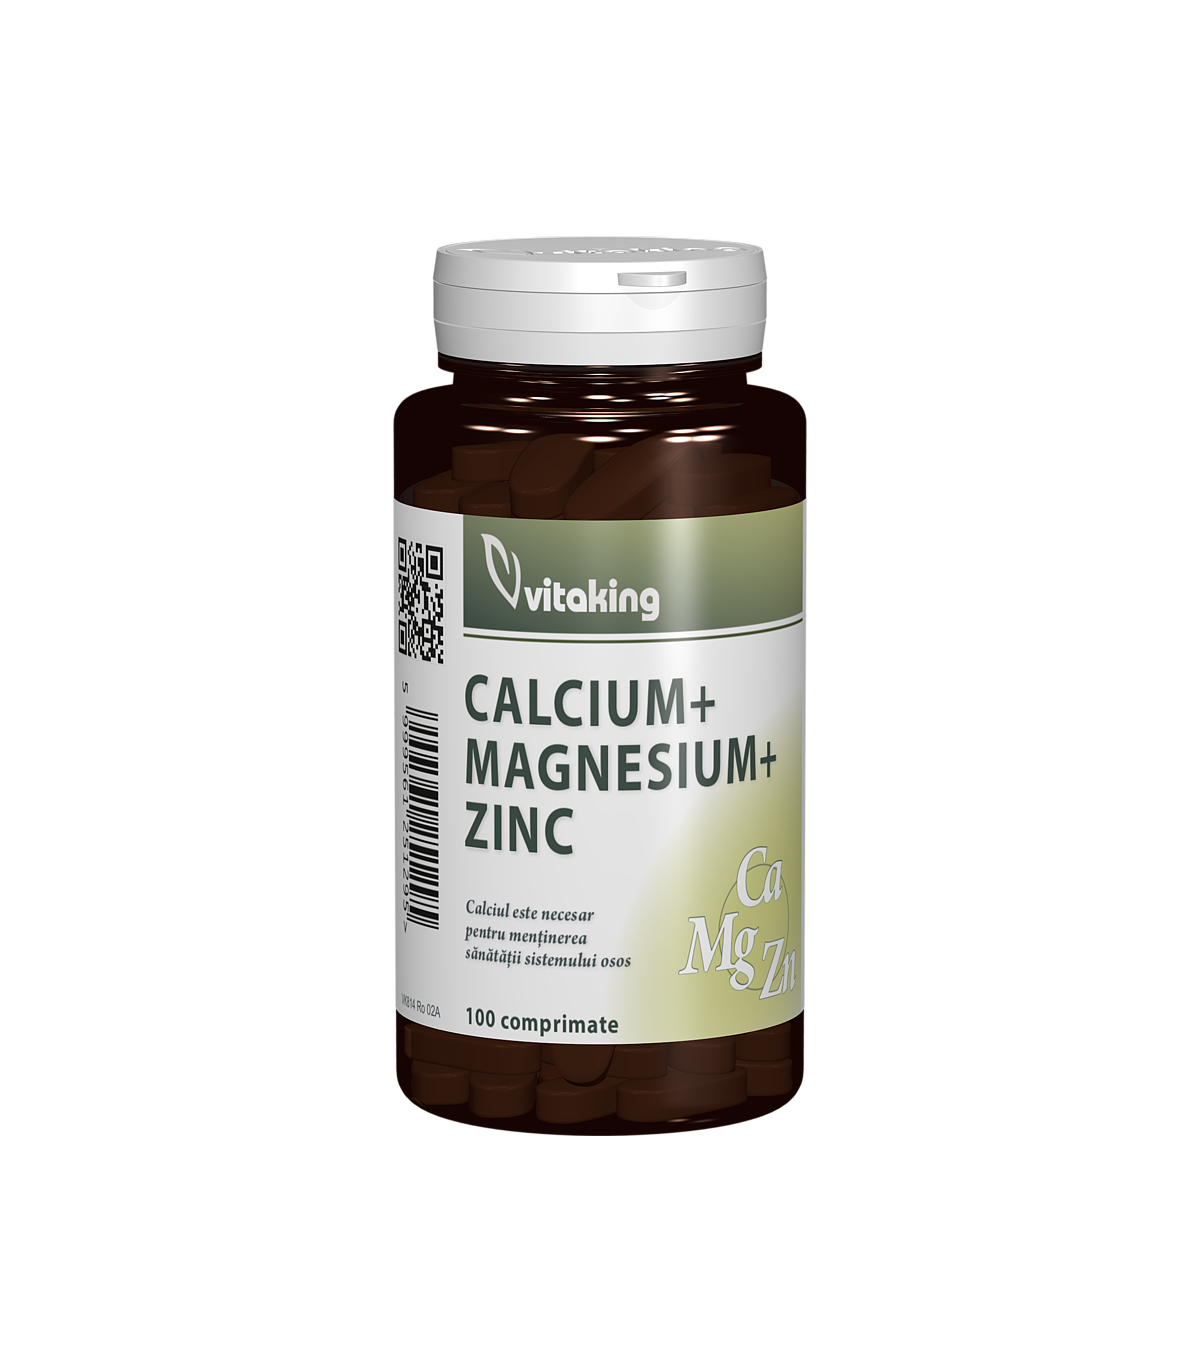 Calciu magneziu cu zinc, 100cpr - vitaking